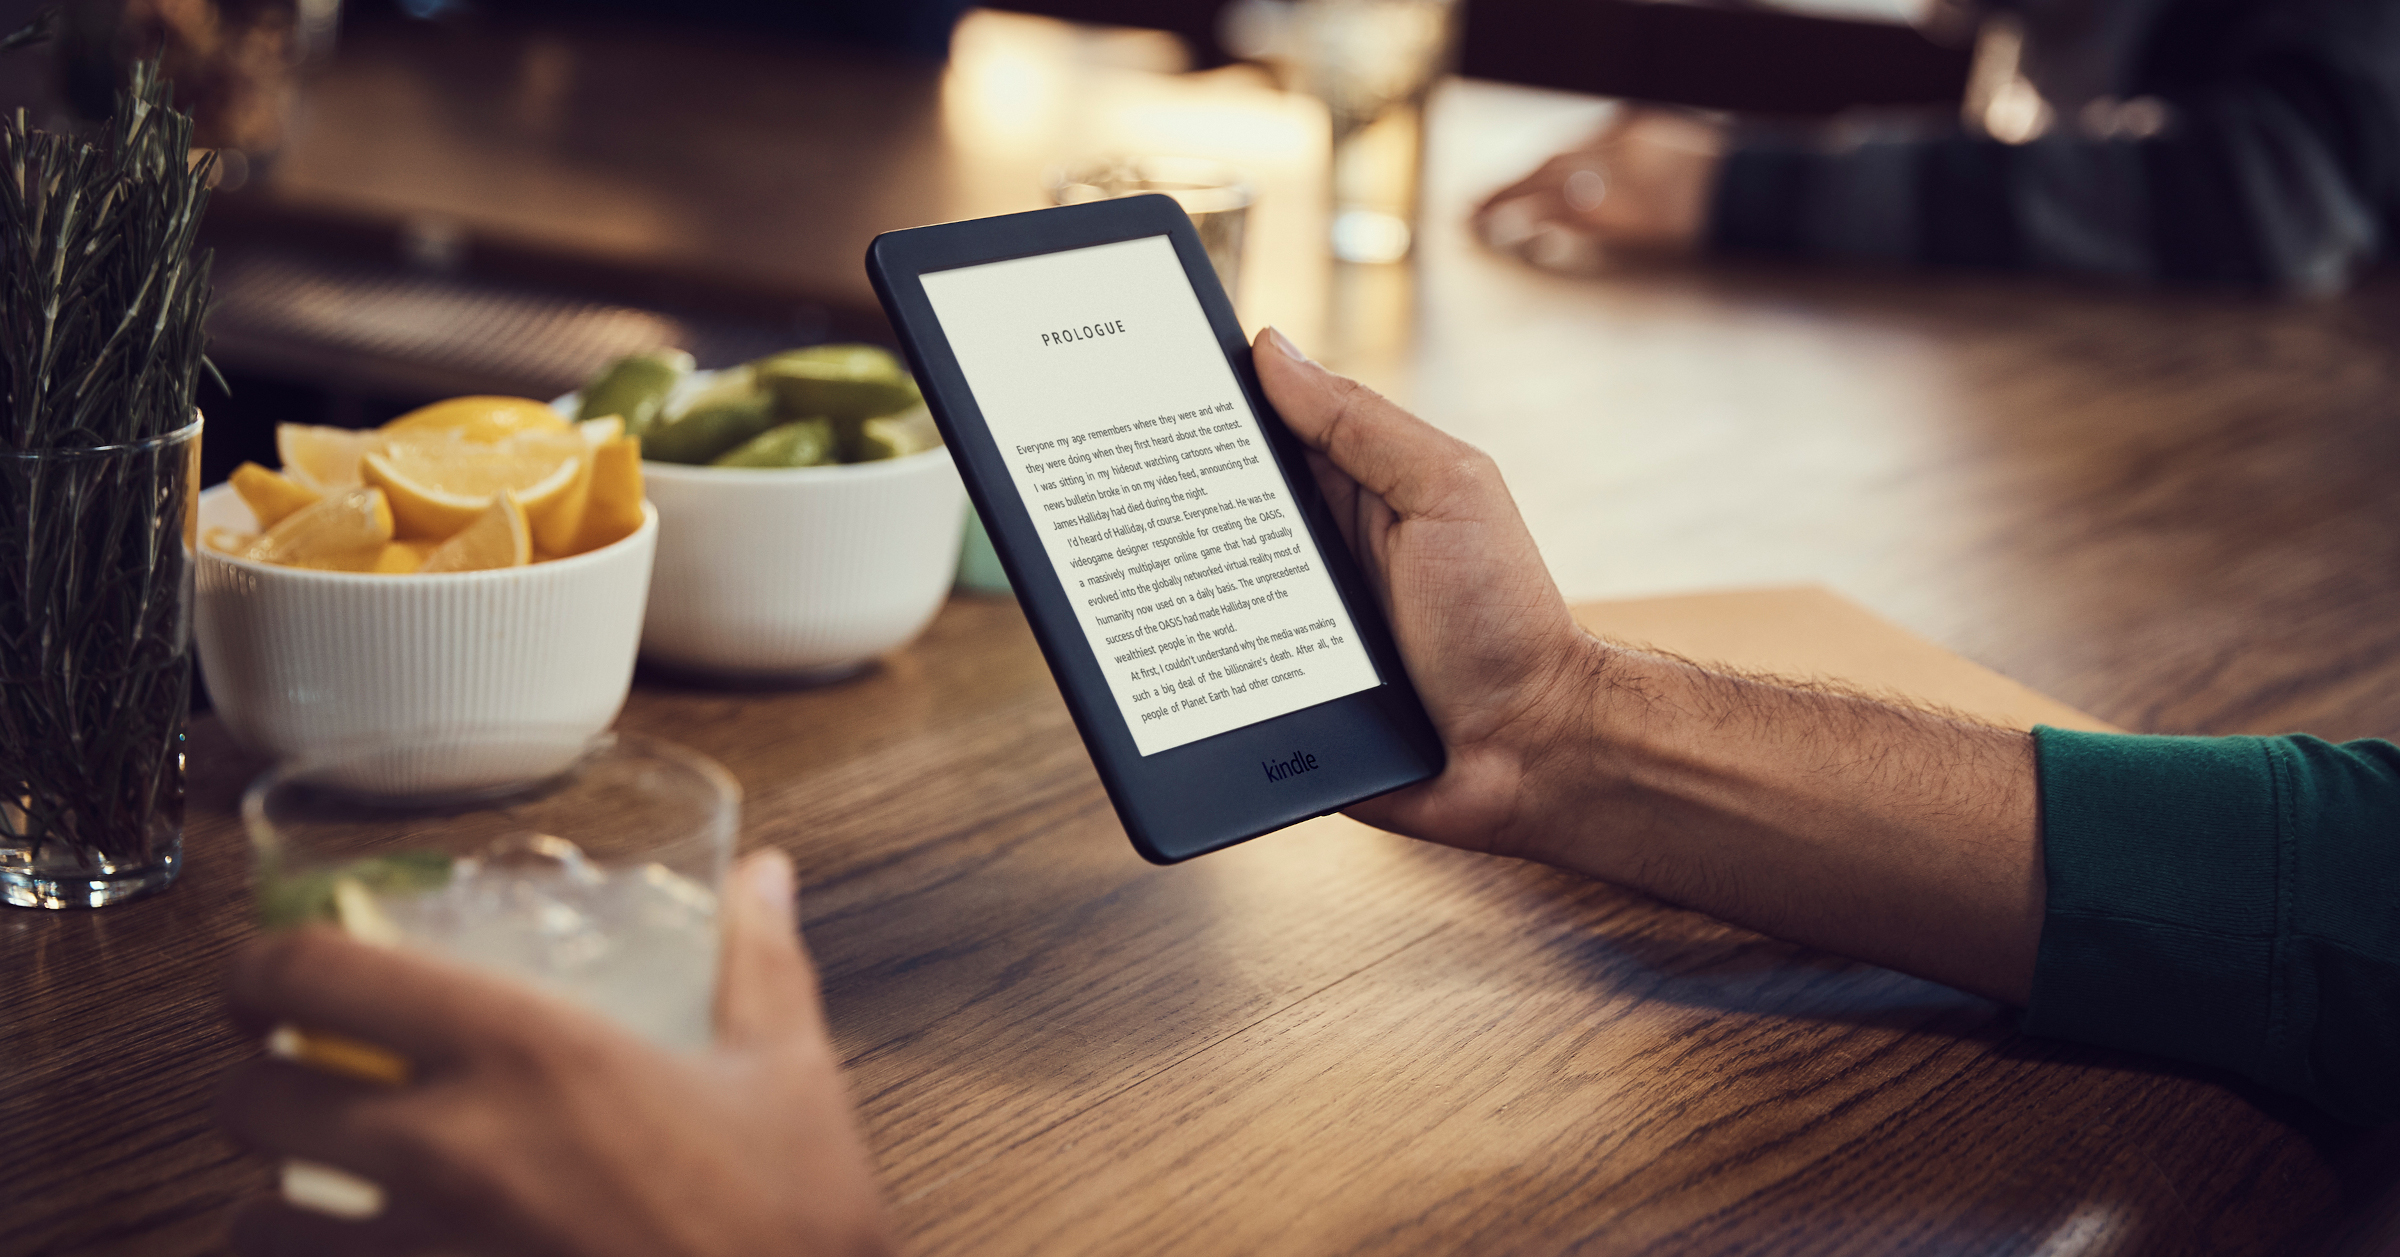 Kindle Paperwhite 8Gb Wifi Waterproof 6 Pulgadas 10 Generacion Con  Luz Libro Digital Ebook Reader Black